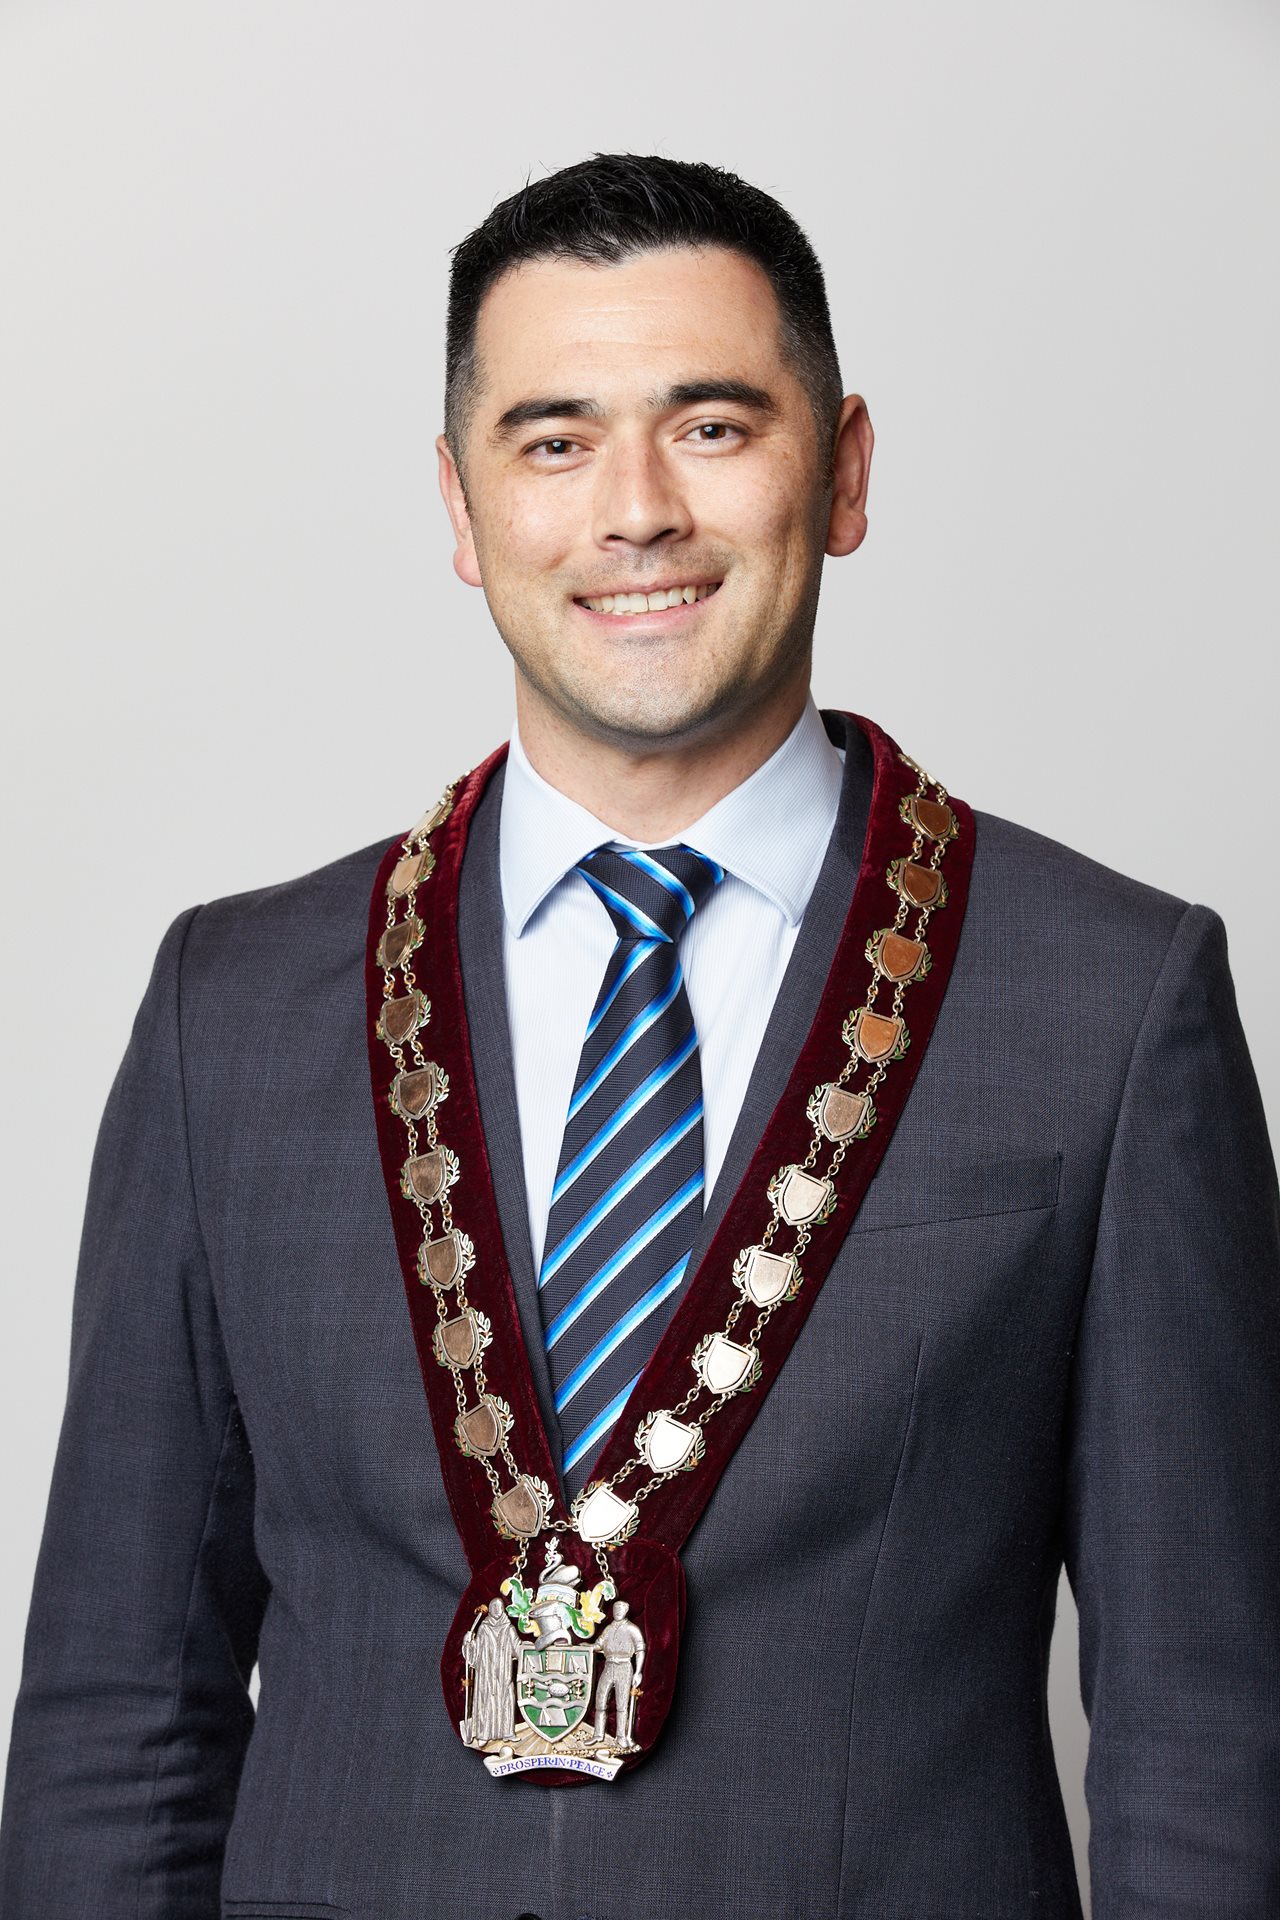 Mayor David McMullen